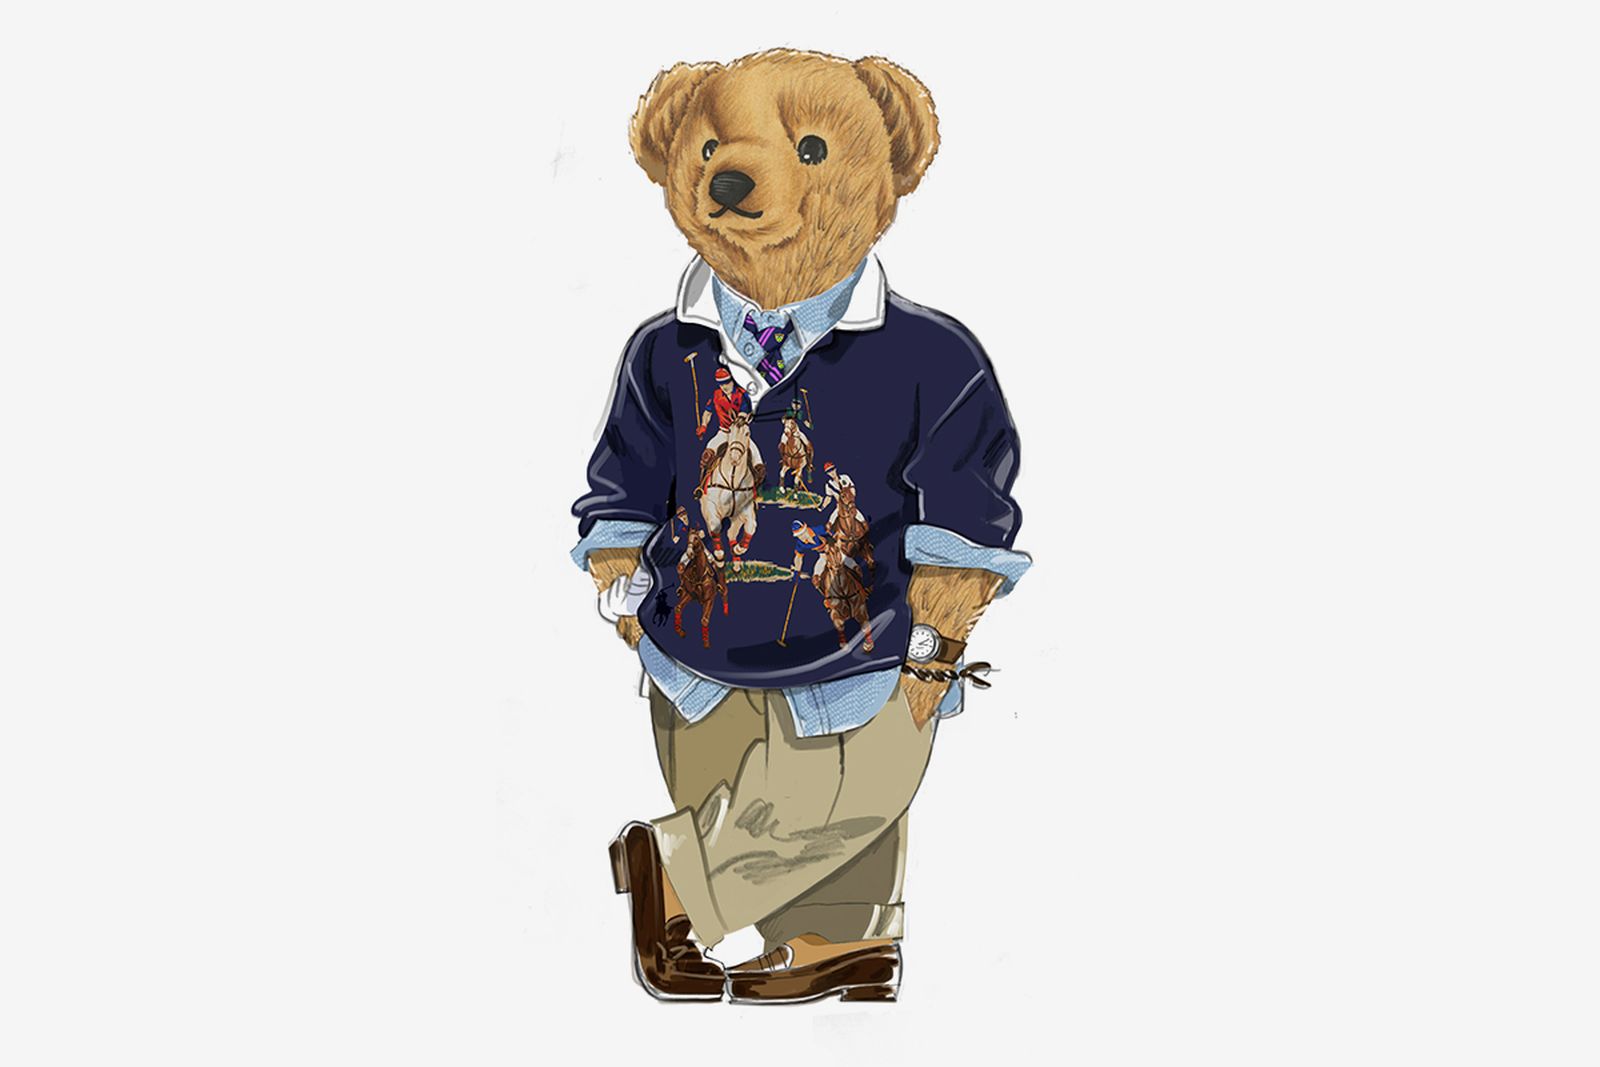 Ralph Lauren Polo Bear